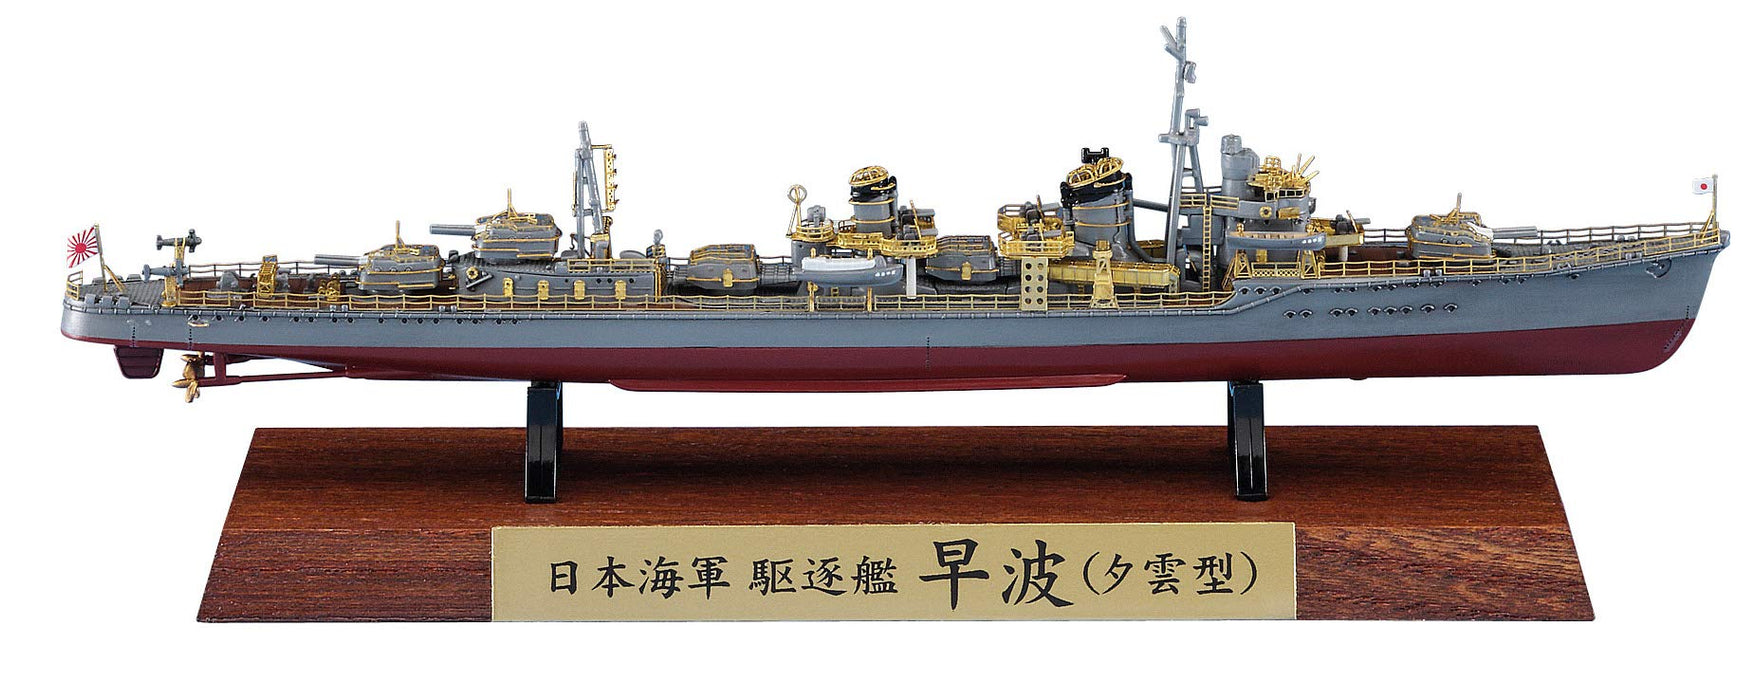 Hasegawa 1/700 Destroyer de la Marine Japonaise Hayami (Type Yugumo) Pleine Coque Spécial Plastique Modèle Ch124